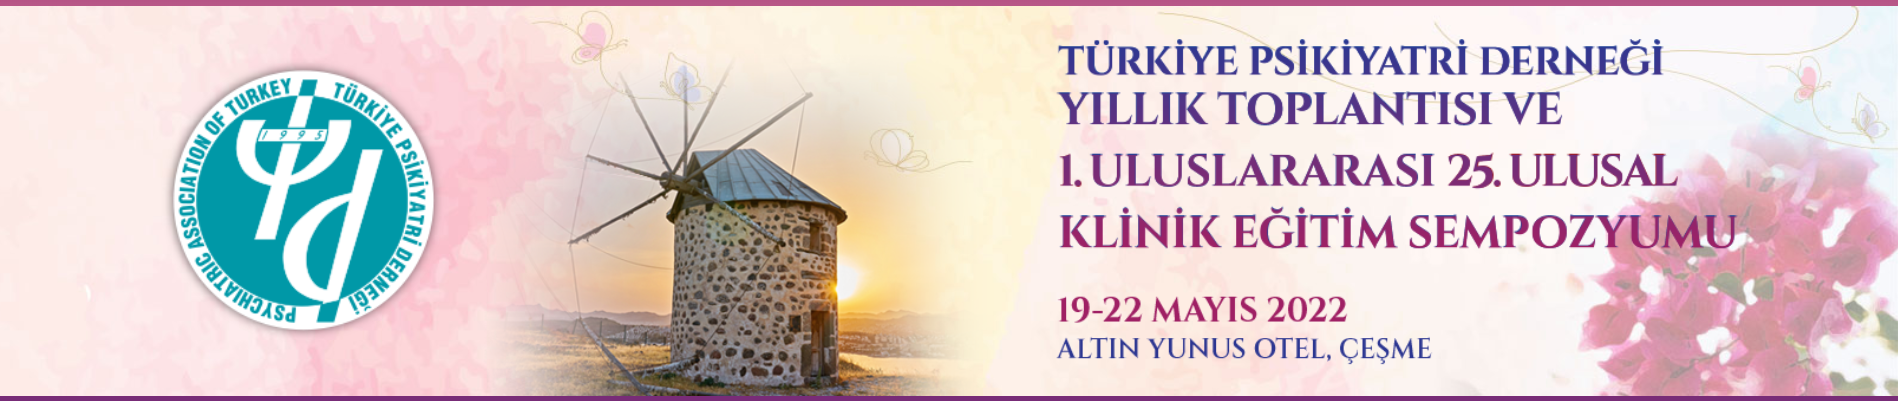 Türkiye Psikiyatri Derneği Yıllık Toplantısı ve 1. Uluslararası 25. Ulusal Klinik Eğitim Sempozyumu